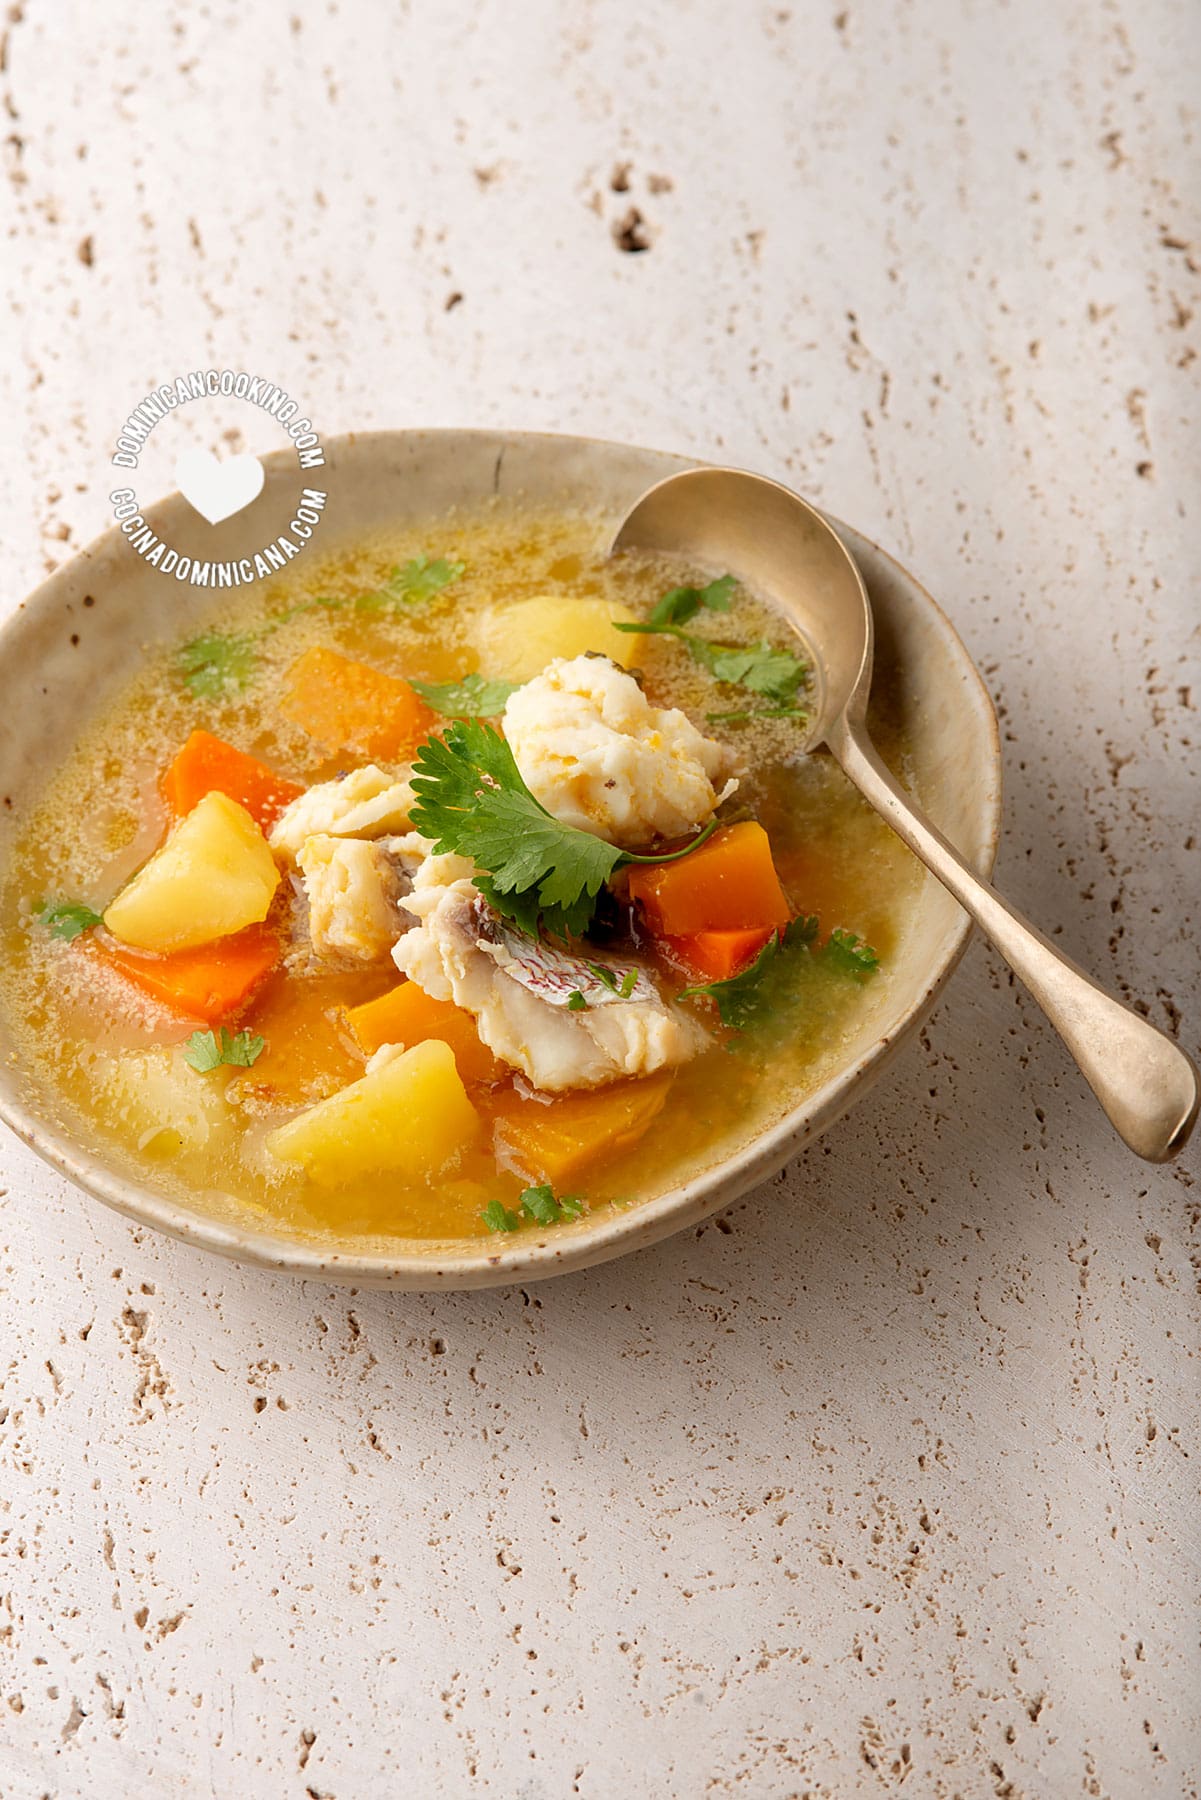 Bowl of sopa de pescado (fish soup)